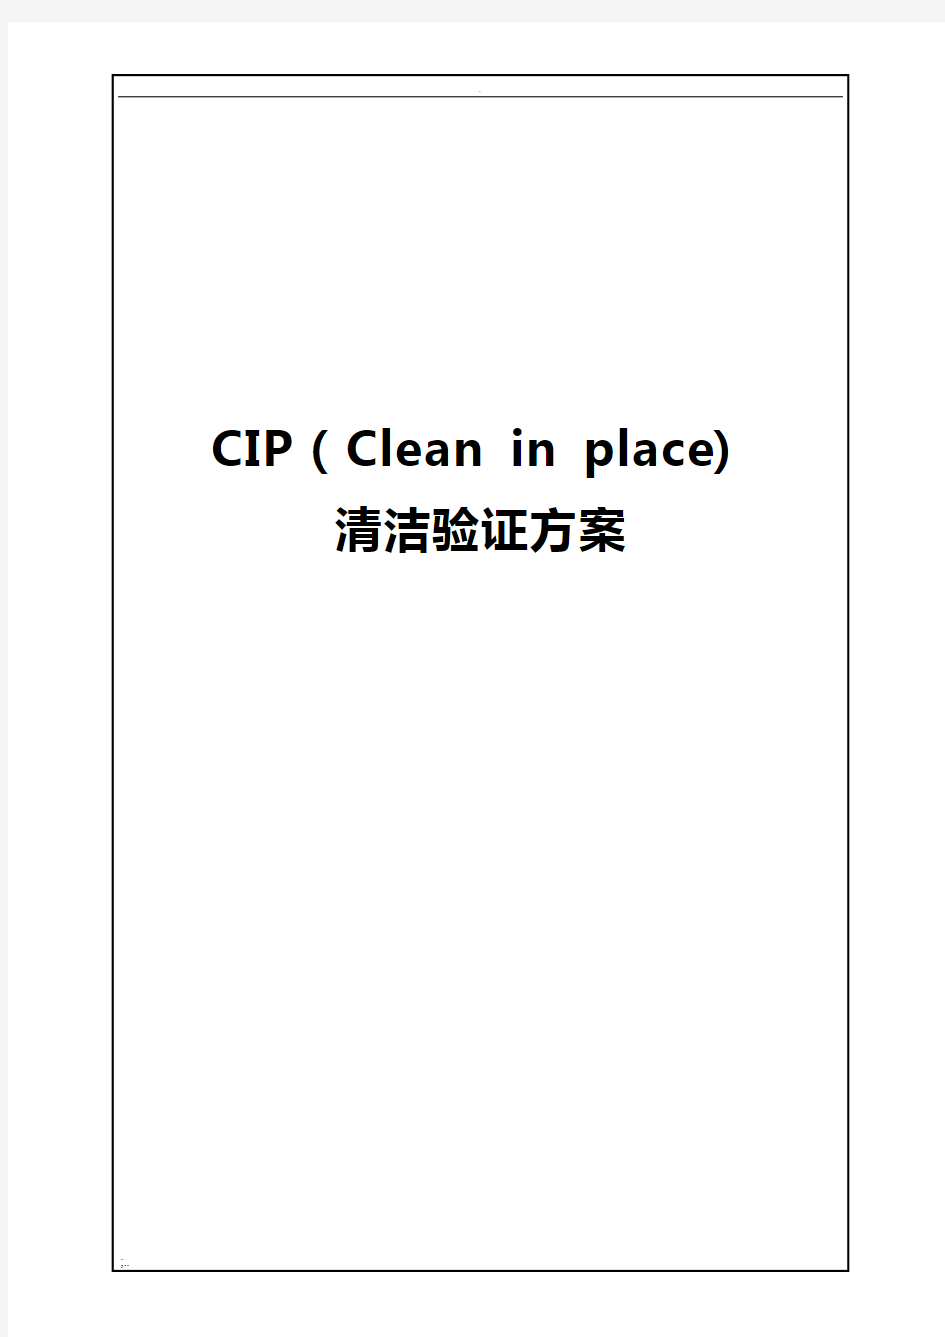 CIP清洁验证方案(暂定稿二次修改)